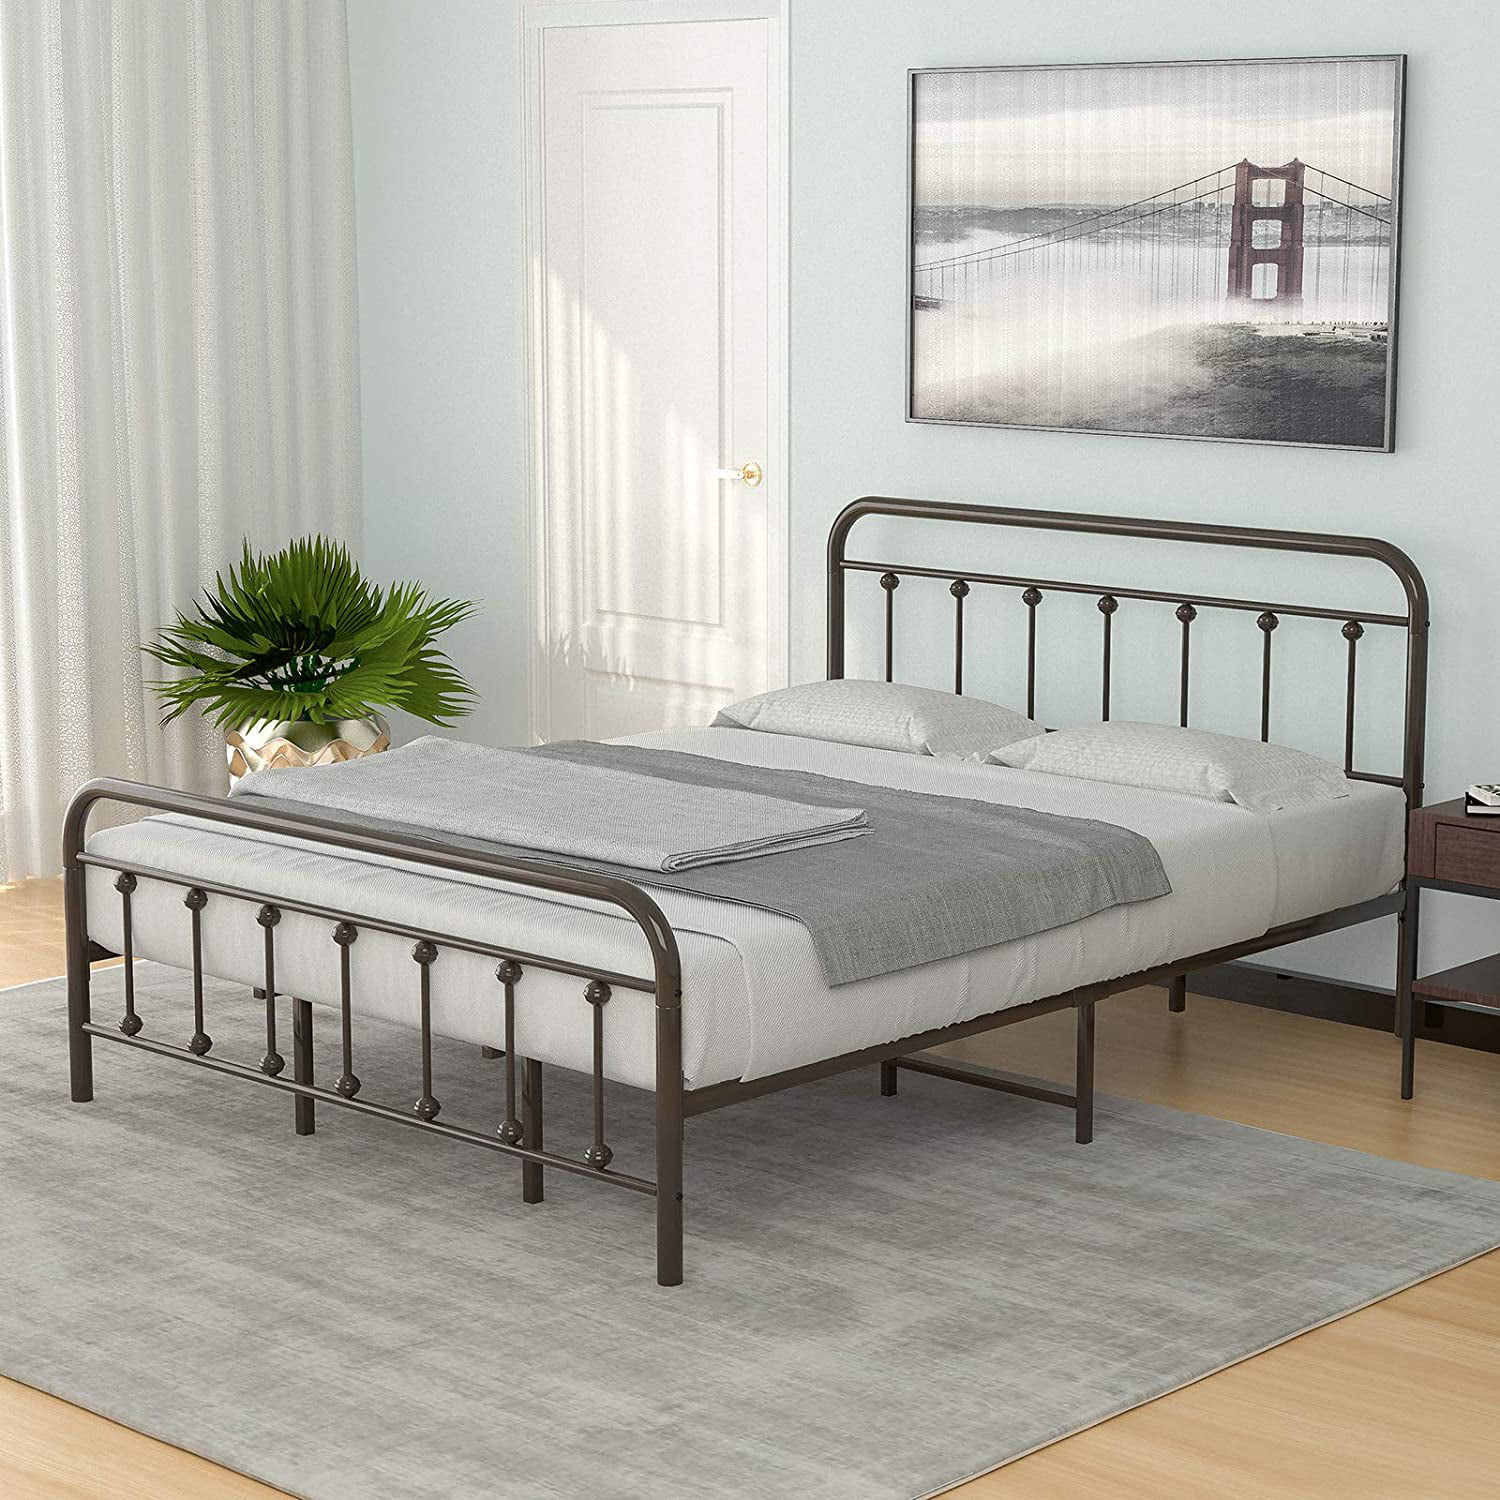 Mecor King Size Metal Platform Bed, Metal Bed Frame For King Size Bed